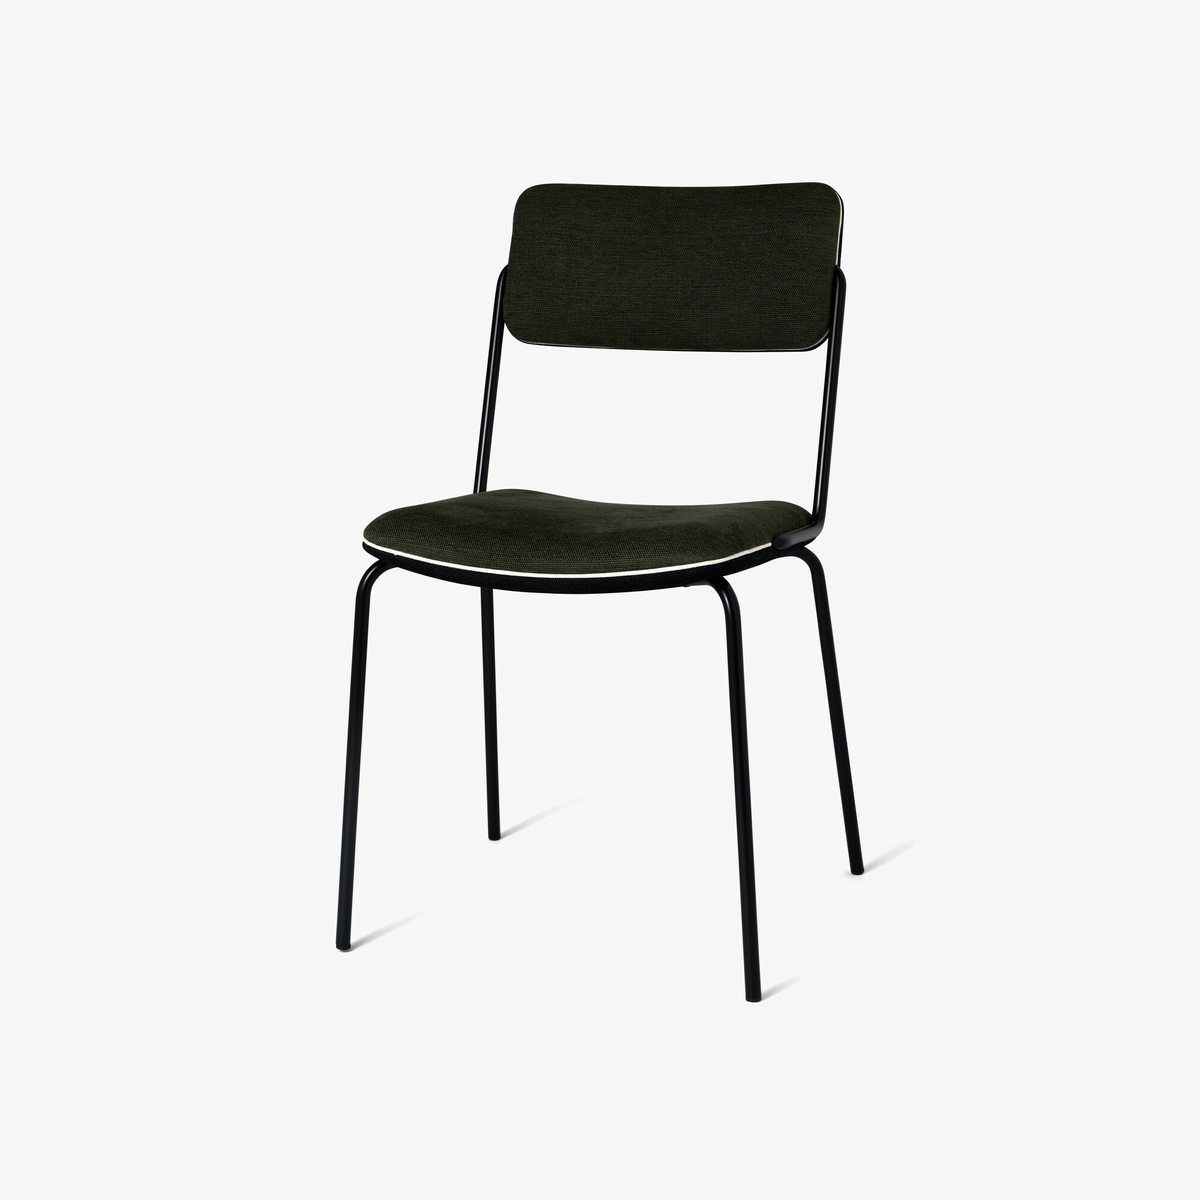 Chair Double Jeu, Green / Black - H85 x W51 x D43 cm - Cotton - image 1